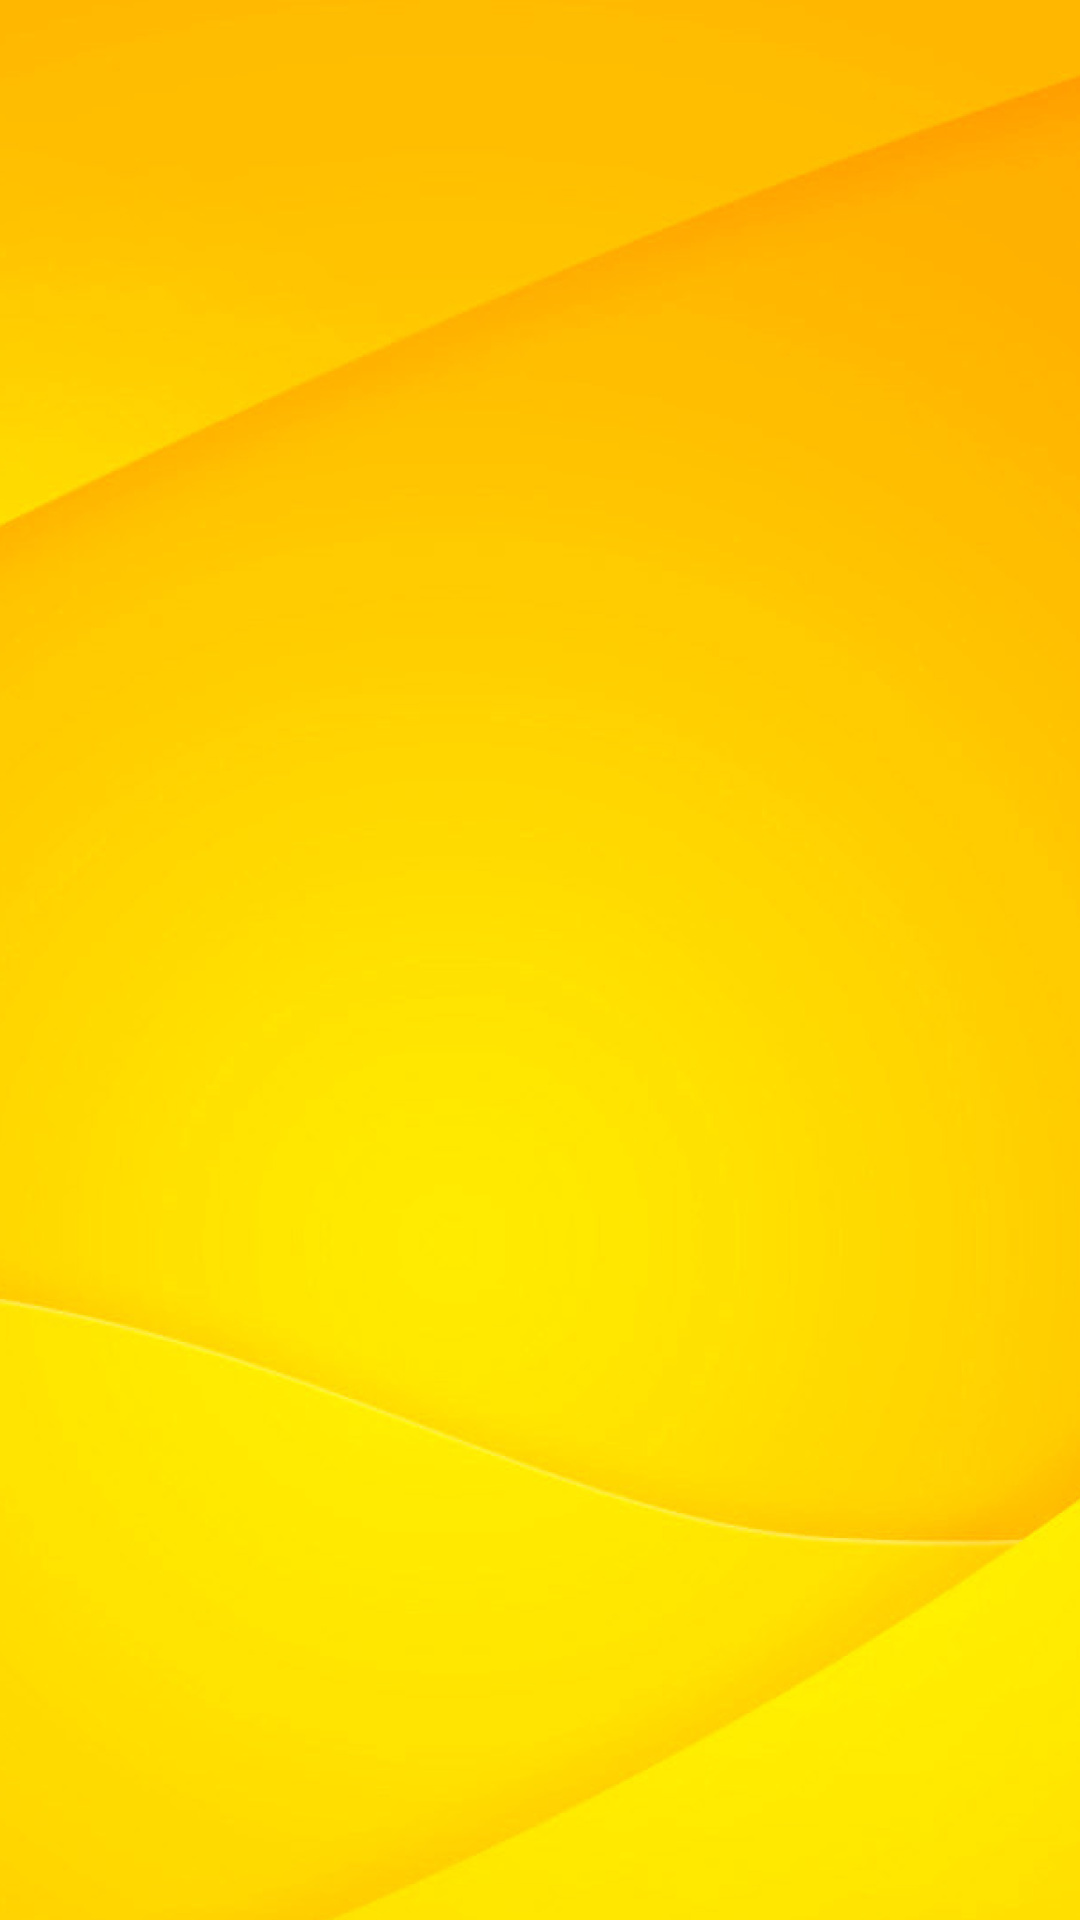 Das Yellow Light Wallpaper 1080x1920